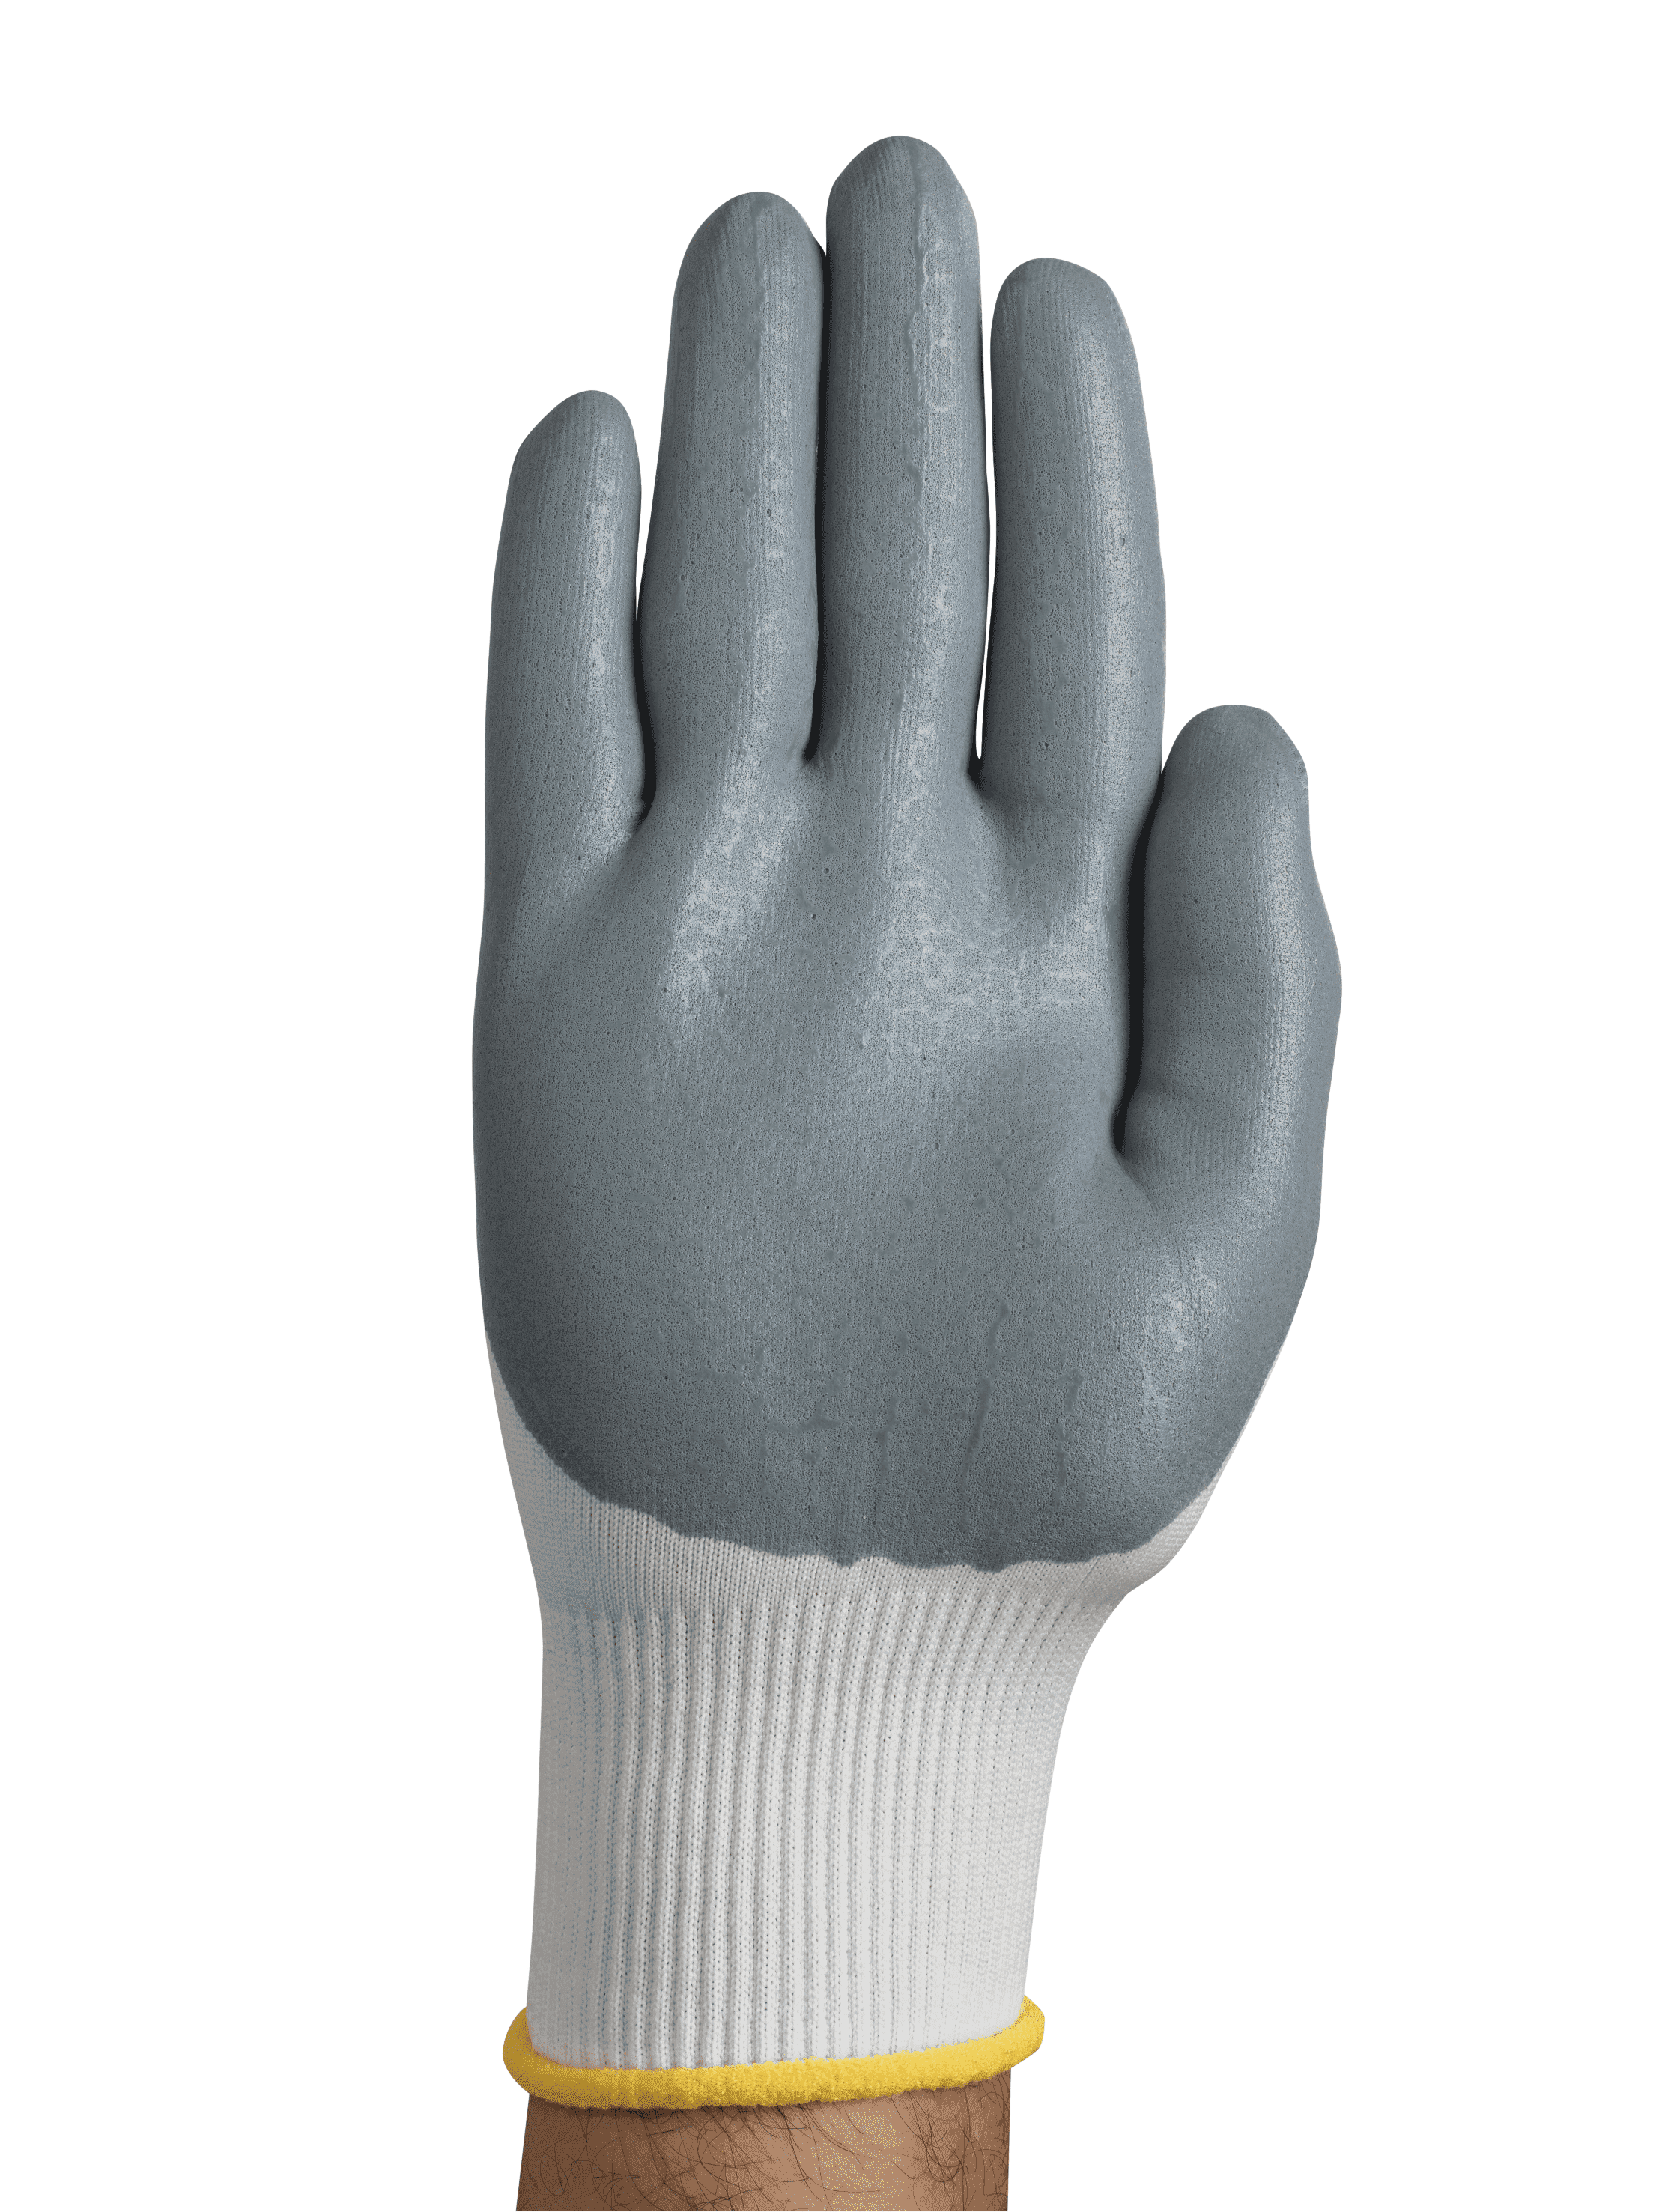 HyFlex 11-800 Work Gloves - 12 Pairs